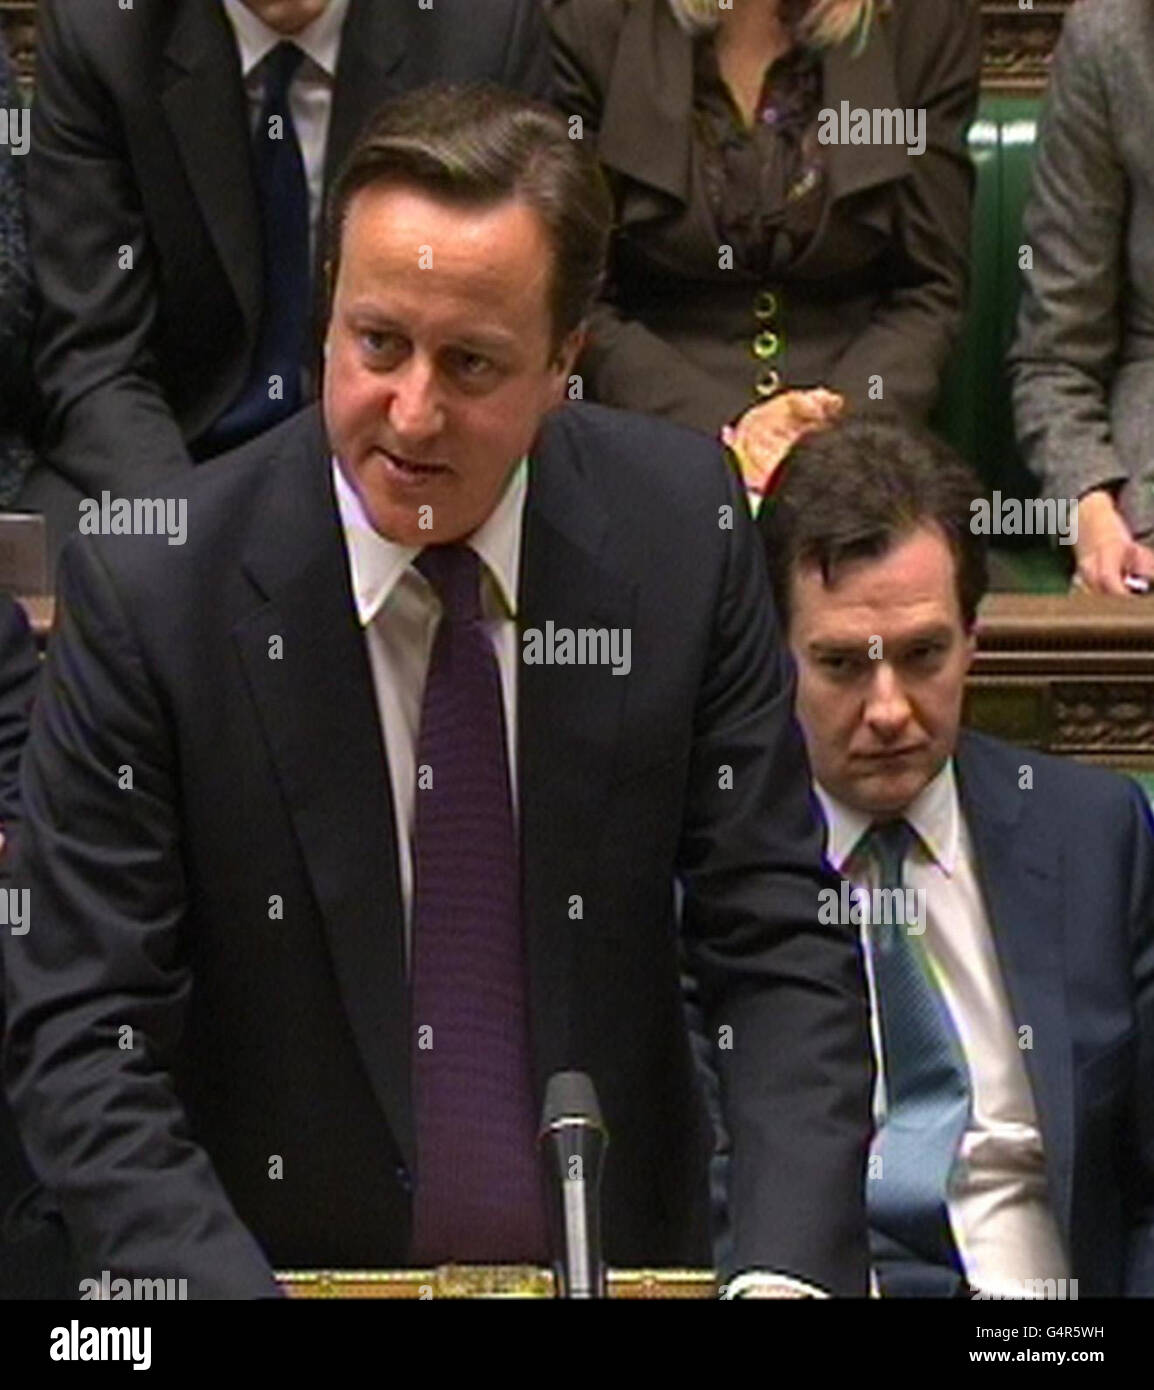 Le Premier ministre David Cameron s'adresse à la Chambre des communes où il a défendu sa décision d'opposer son veto à un nouveau traité de l'Union européenne, tandis que son député libéral démocrate Nick Clegg a critiqué cette décision comme étant « mauvaise pour la Grande-Bretagne ». Banque D'Images